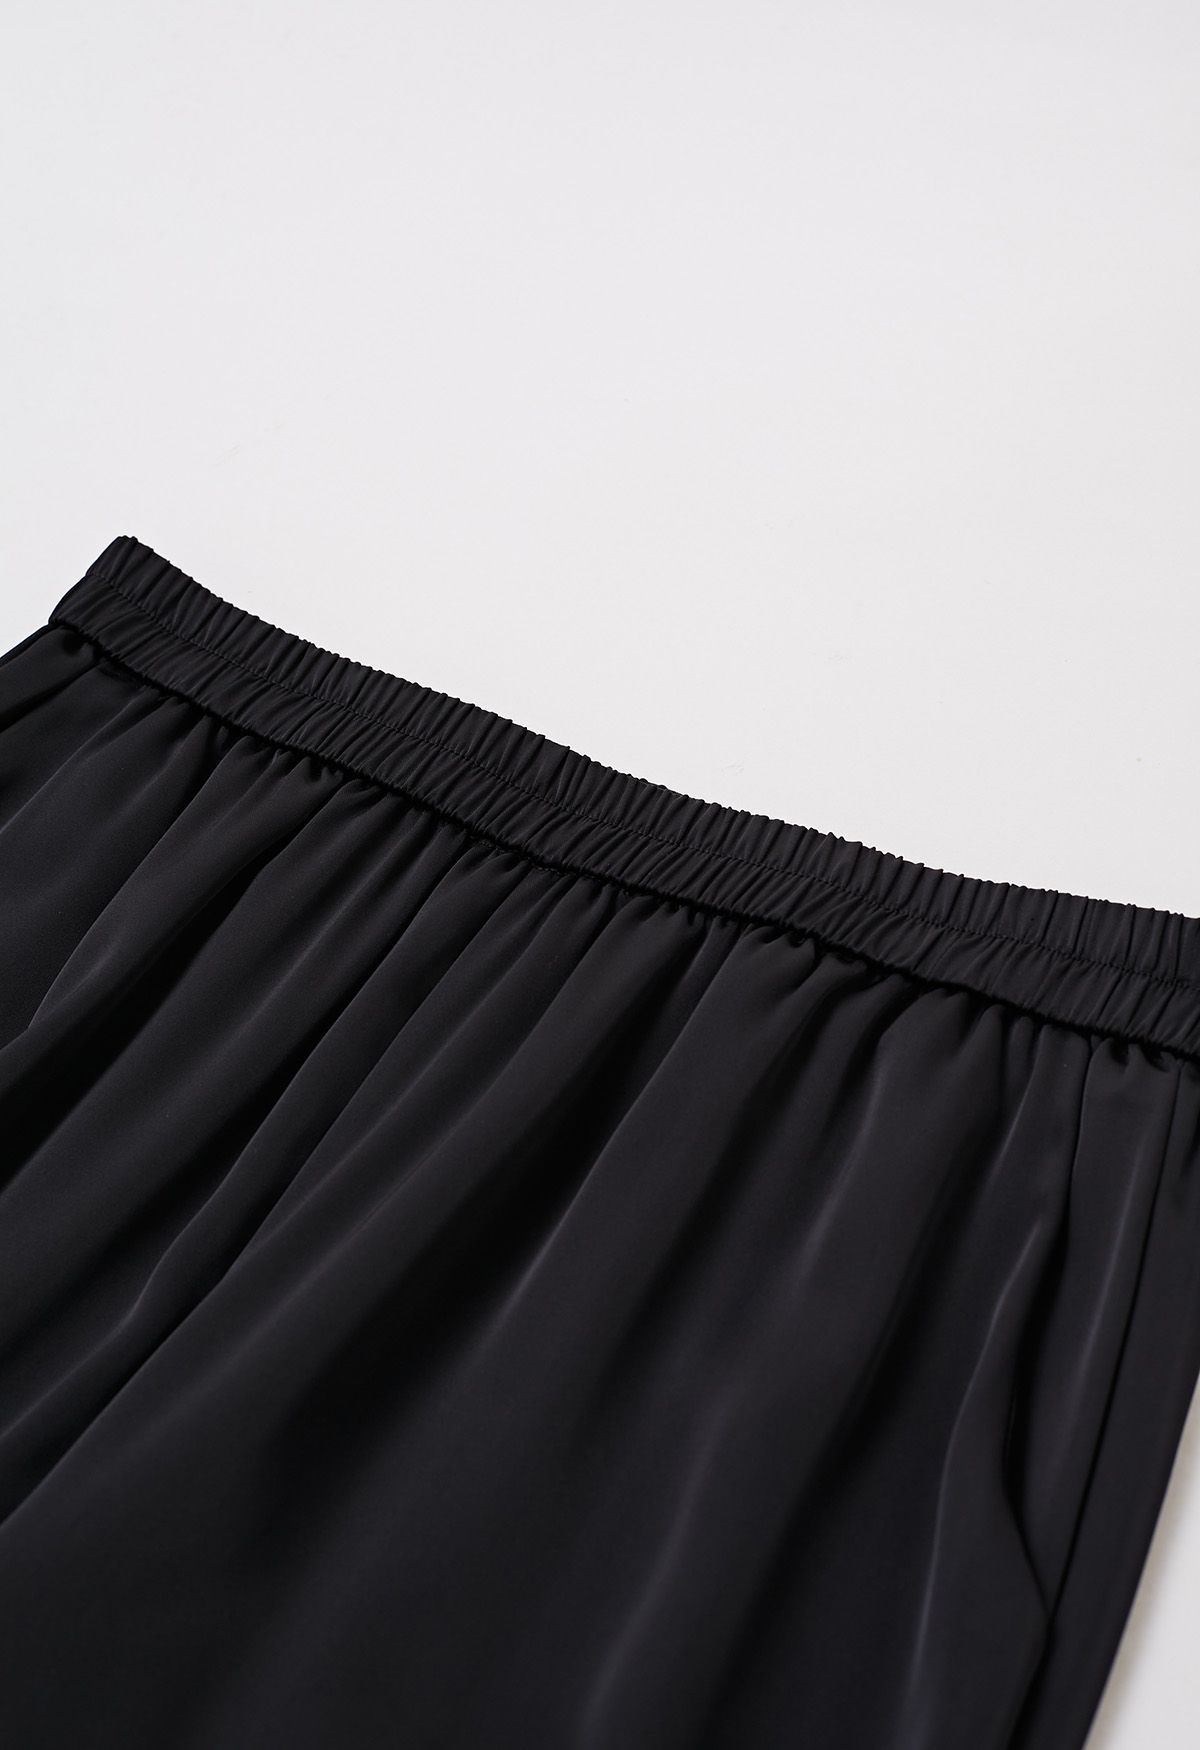 Pantalones sin cordones con acabado satinado en negro